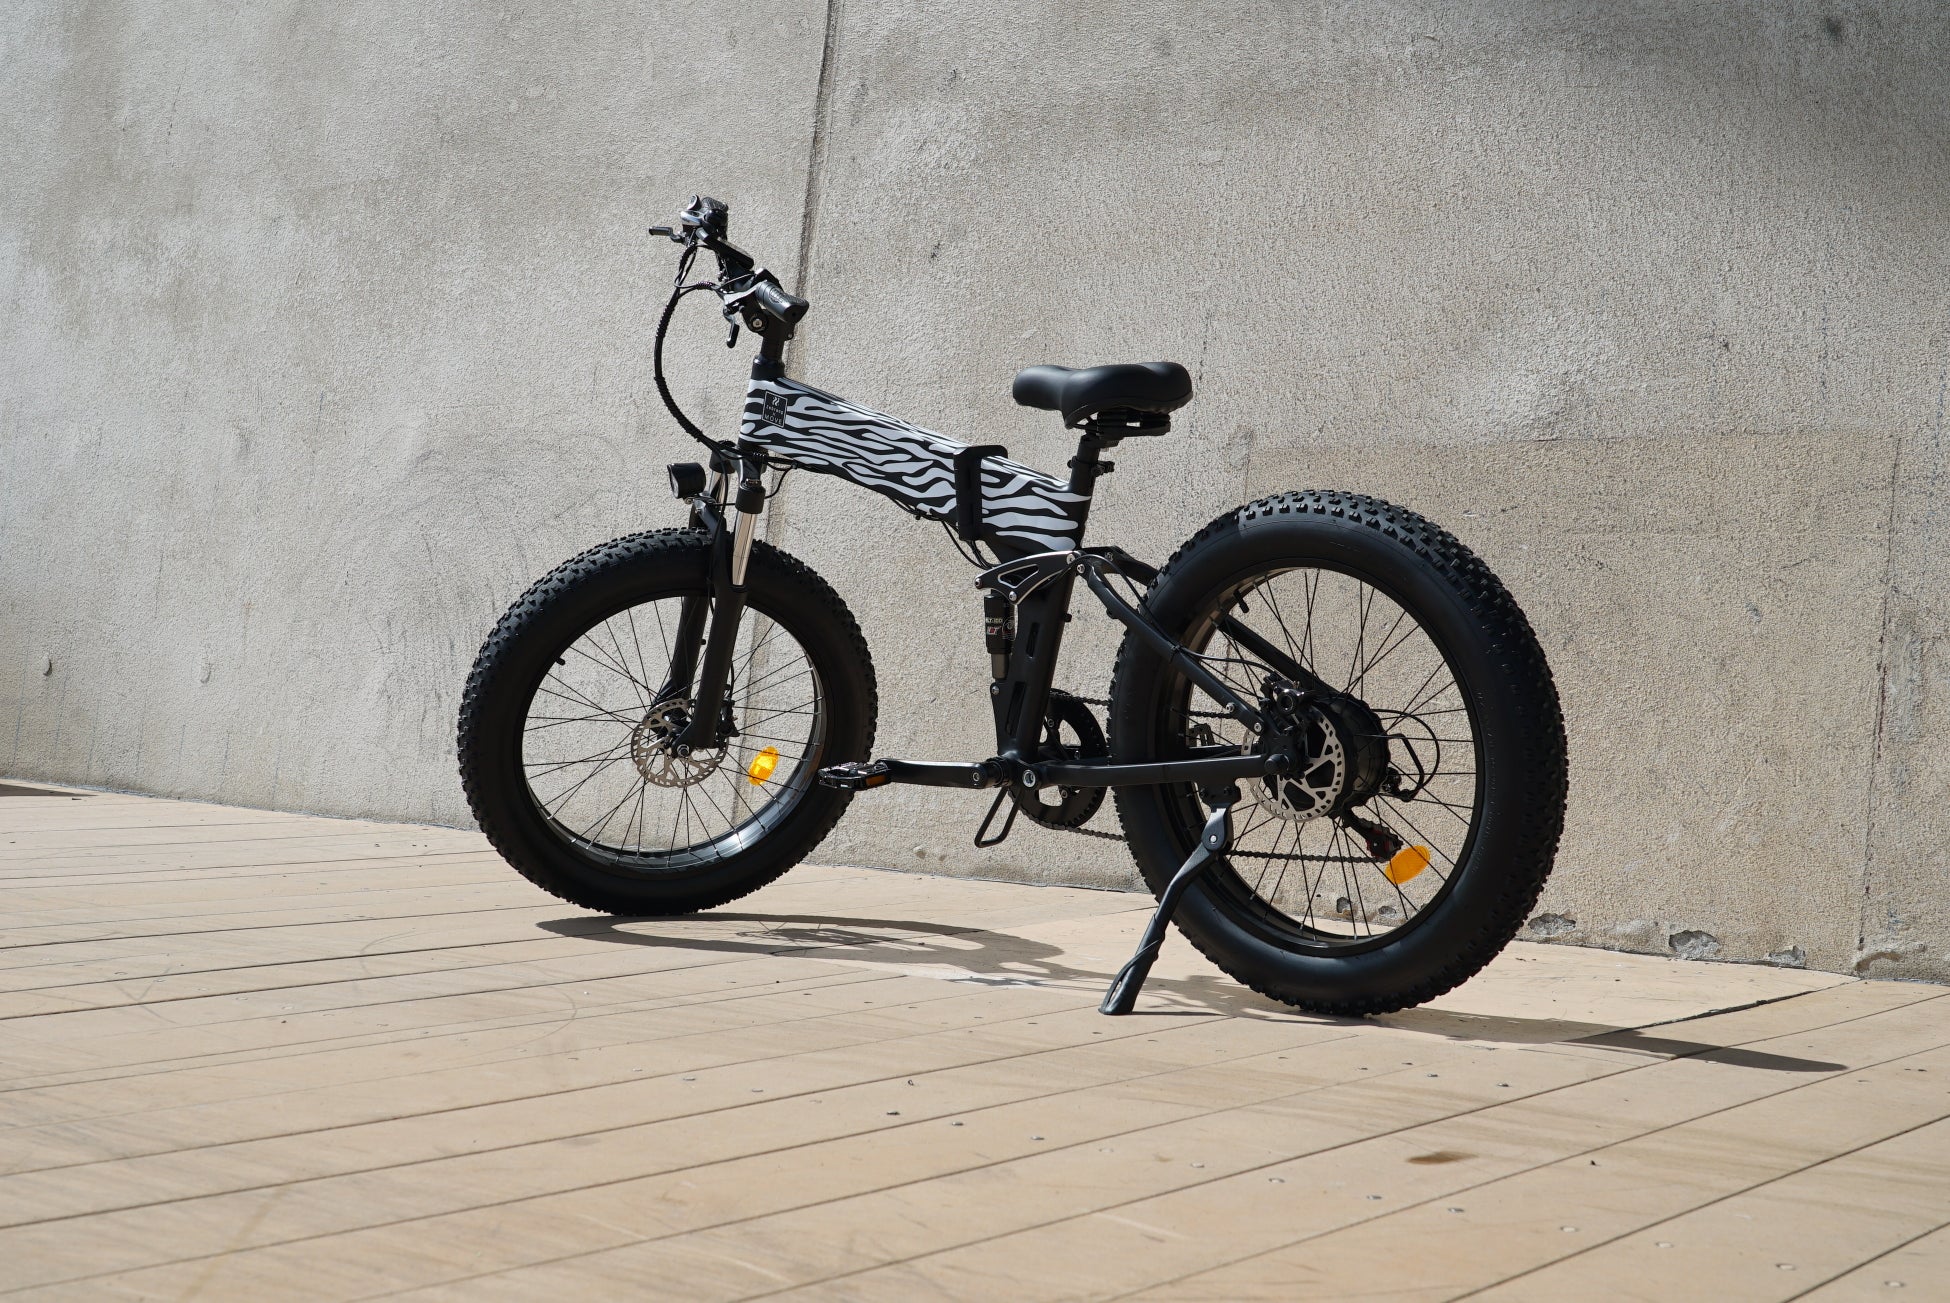 日本発の電動自転車ブランド「MOVE.eBike」が、アウトドアコーヒーギア「Zebrang」と電動自転車のコラボモデルを発売開始。コーヒー×電動自転車で、スタイリッシュに日常を彩る。